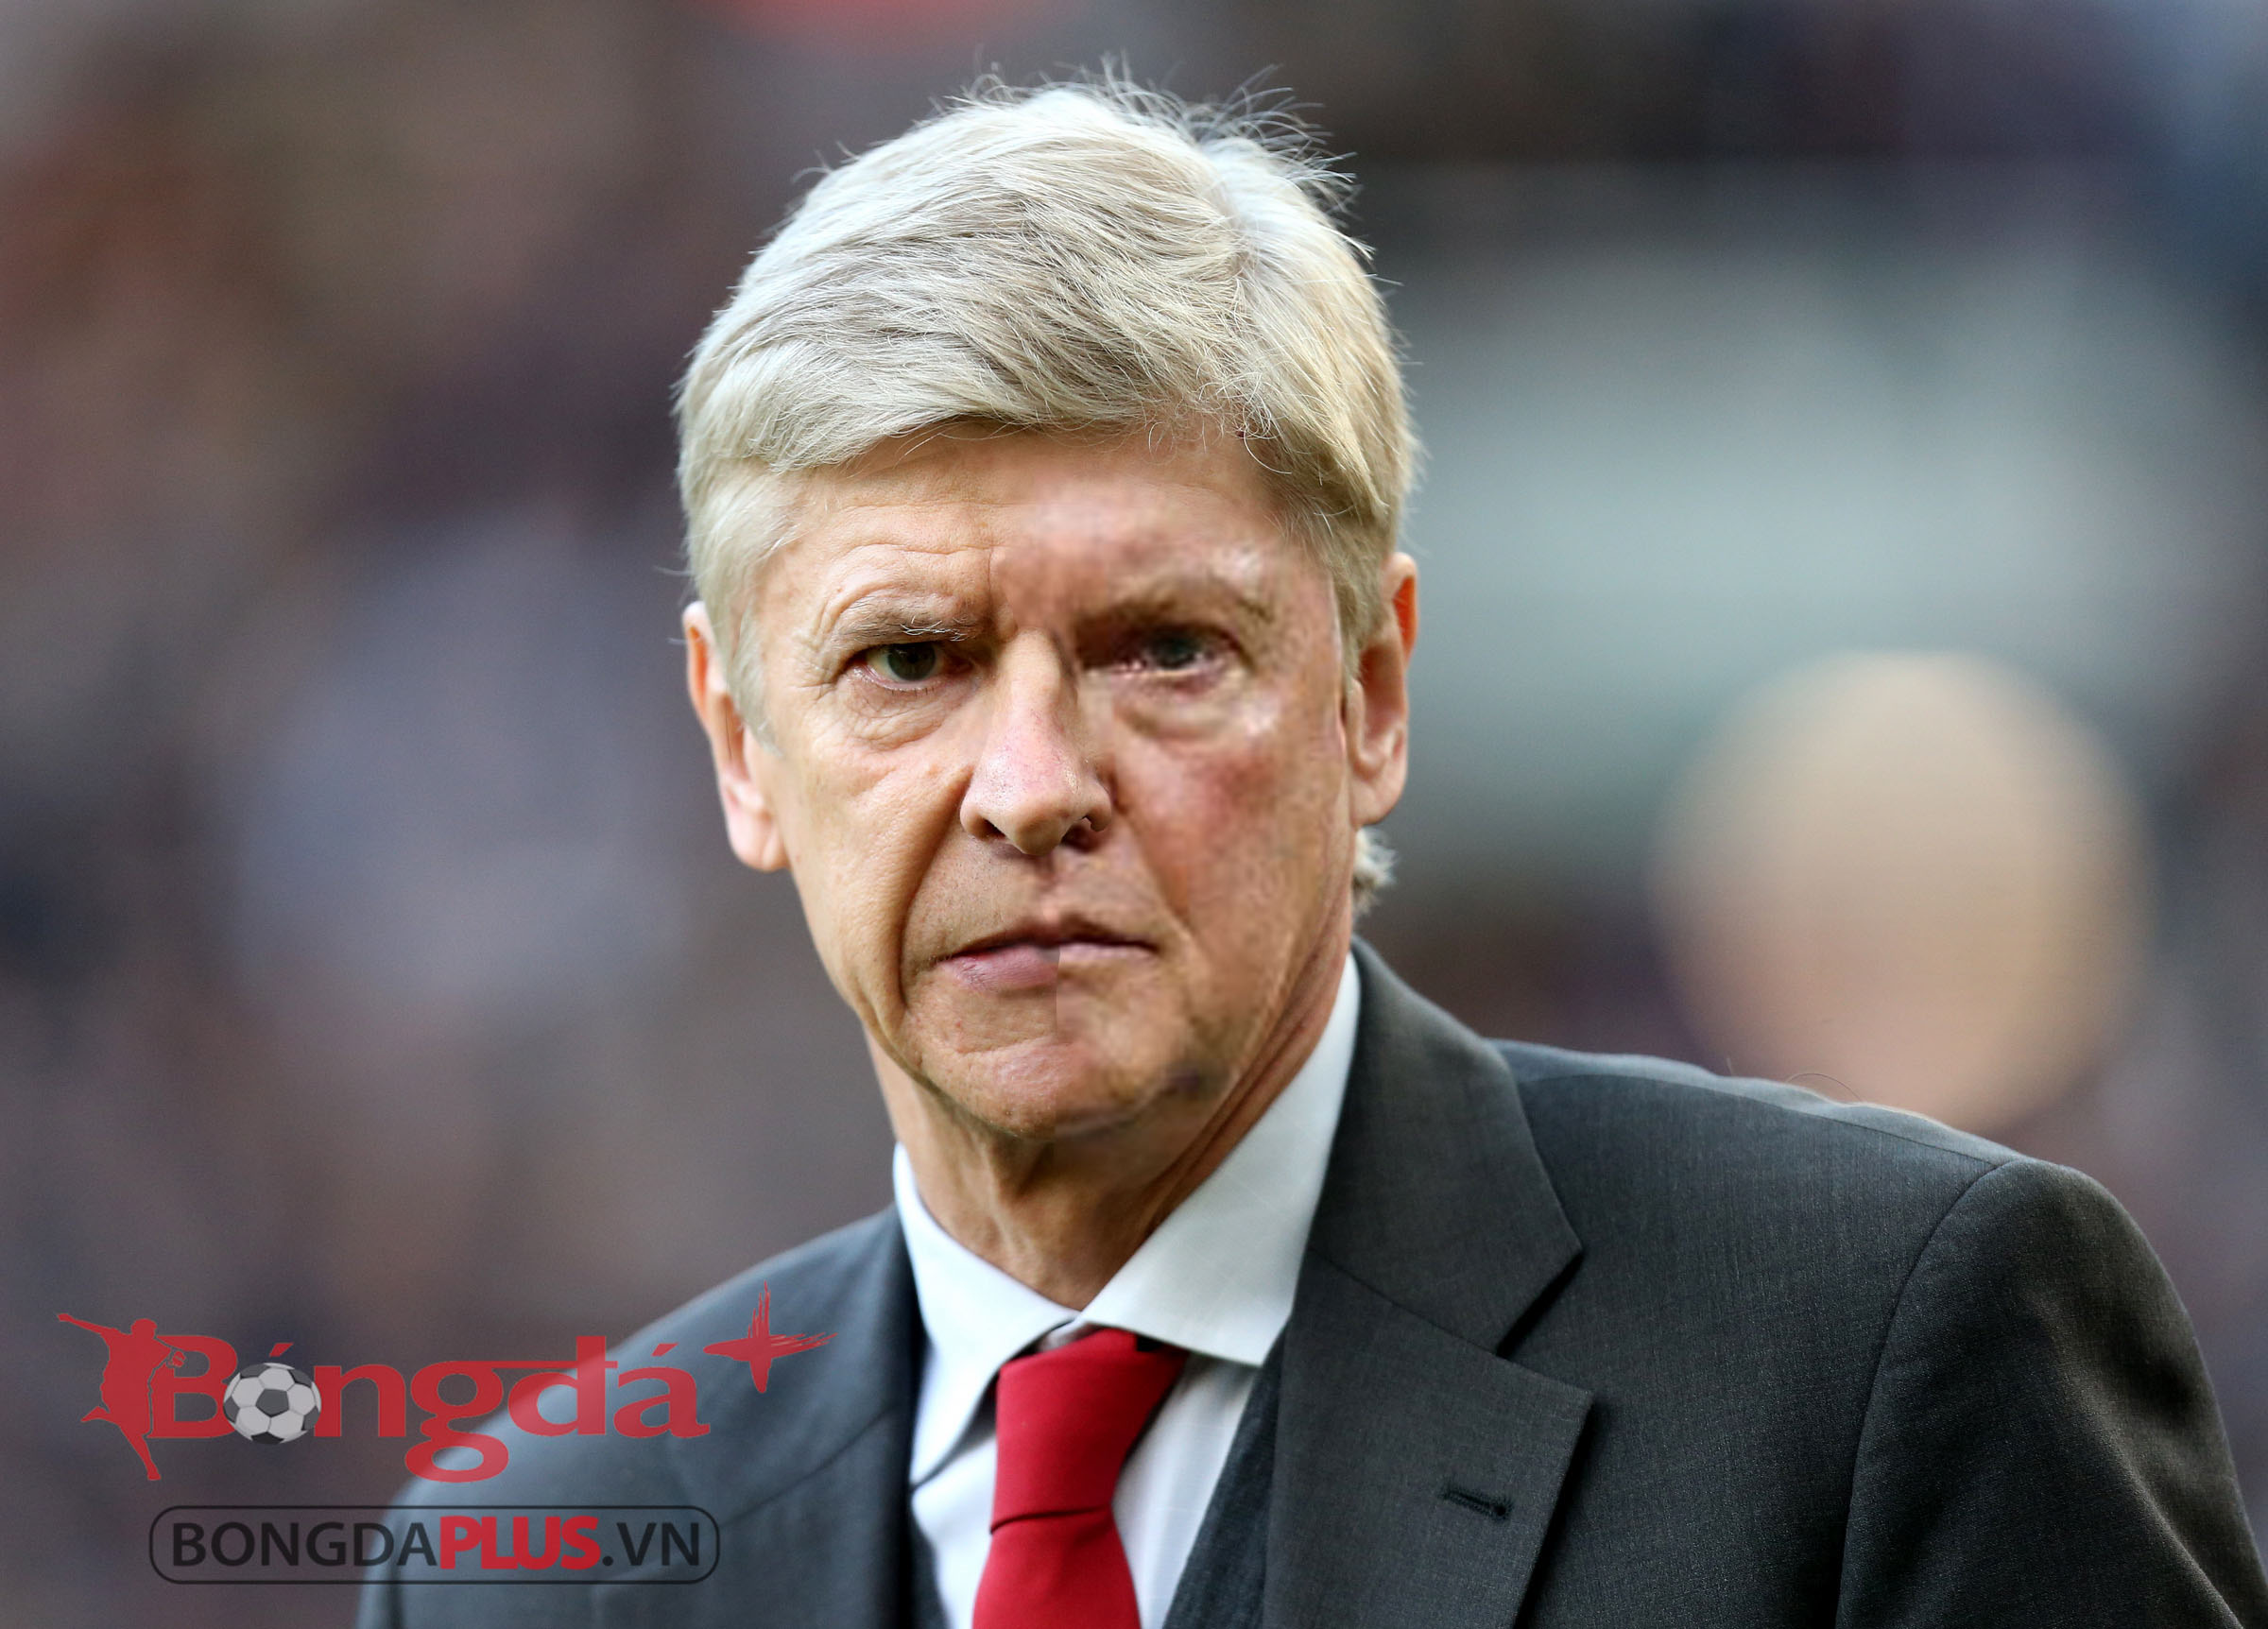  4. Arsene Wenger: Thuyền trưởng của Arsenal nhận 8,3 triệu bảng mỗi mùa. Cùng với Arsenal, HLV Wenger giành 3 NH Anh và 6 FA Cup. Ông đạt tỷ lệ thắng là 57,1%.